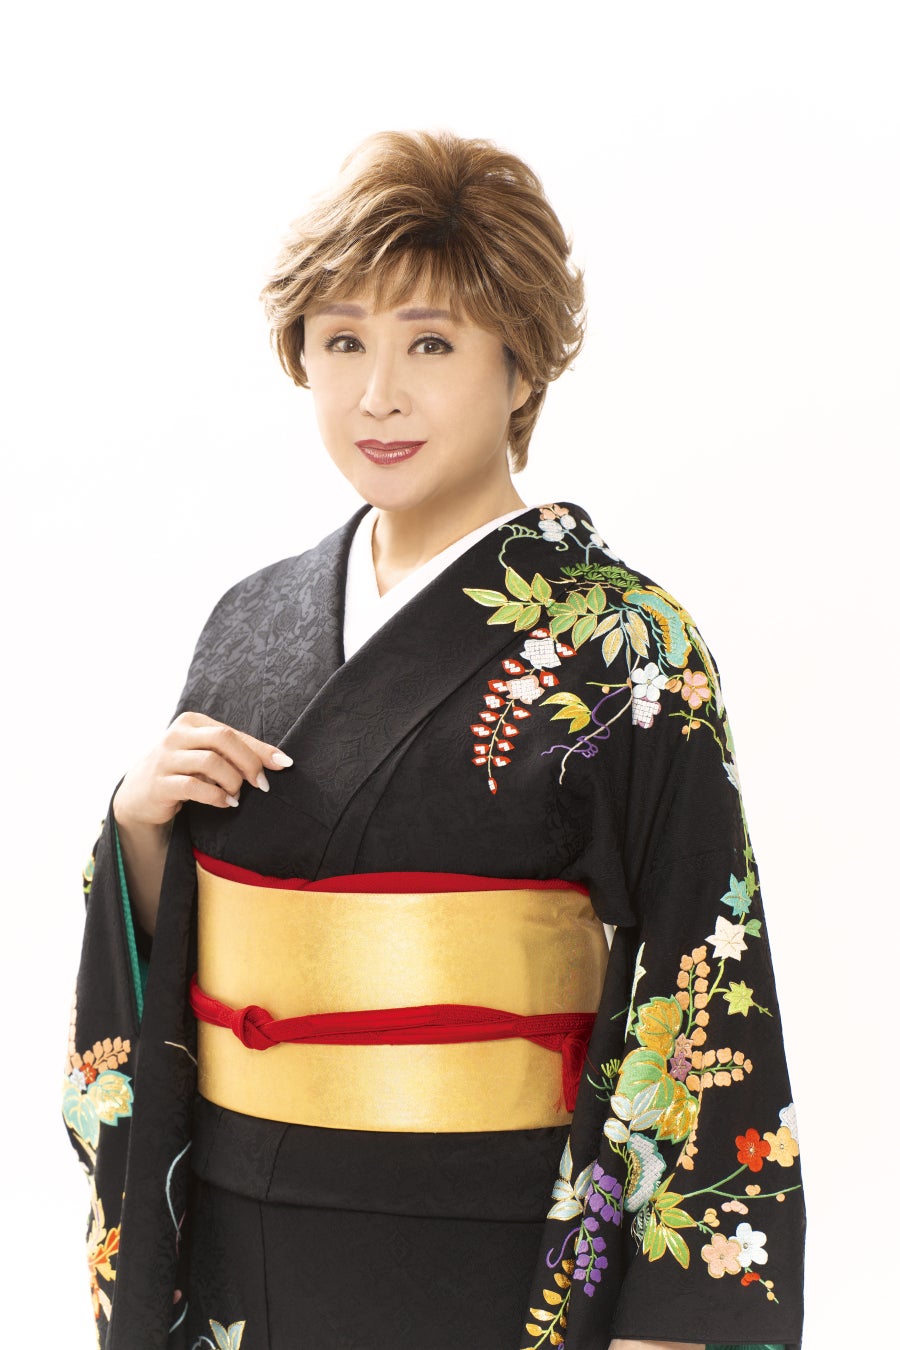 小林幸子さんが「ハナミチ東京 歌舞伎町」のスペシャルアンバサダーに就任。